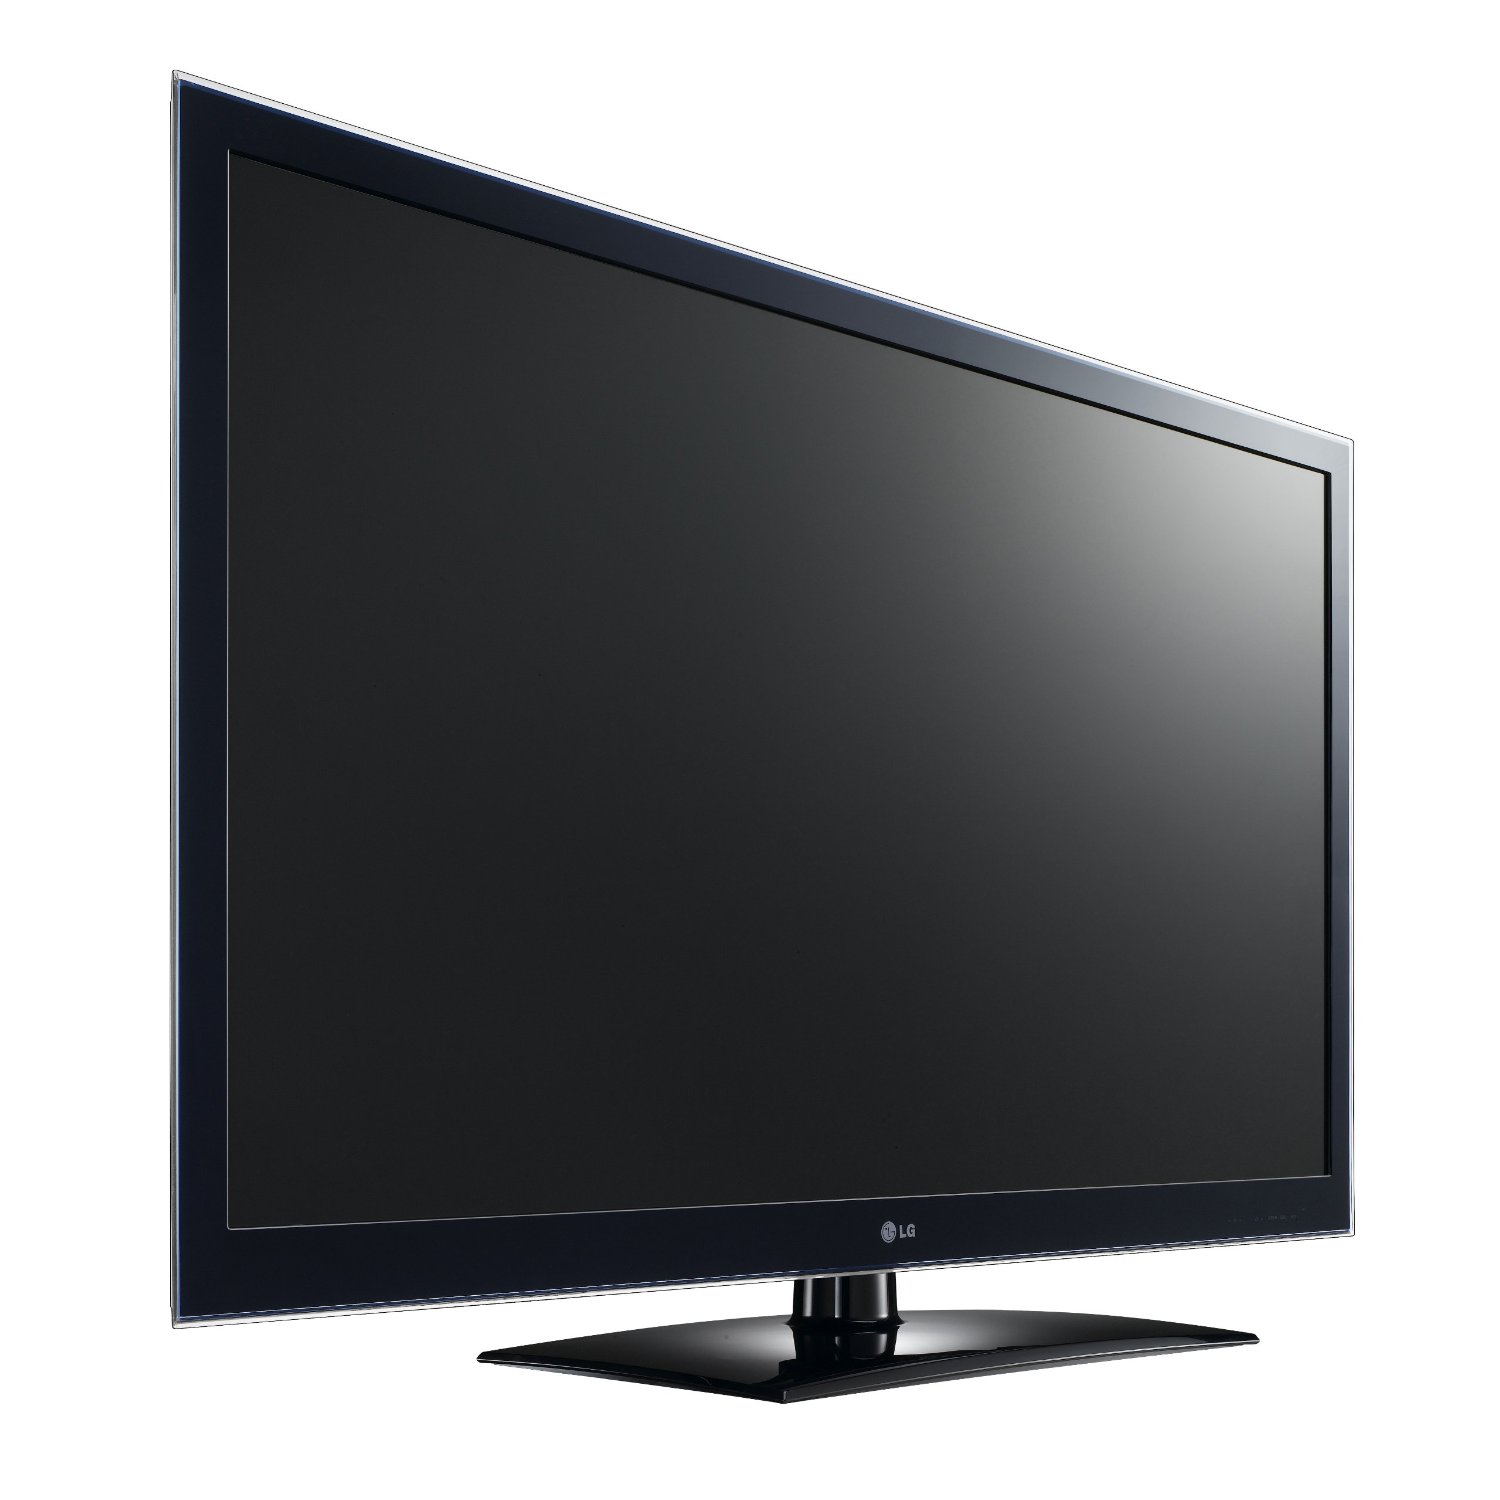 Днс телевизоры лджи. Телевизор LG 42lv4500 42". LG Smart TV 2011. Телевизор LG 42lv571s 42". Телевизор LG LCD led 3d.